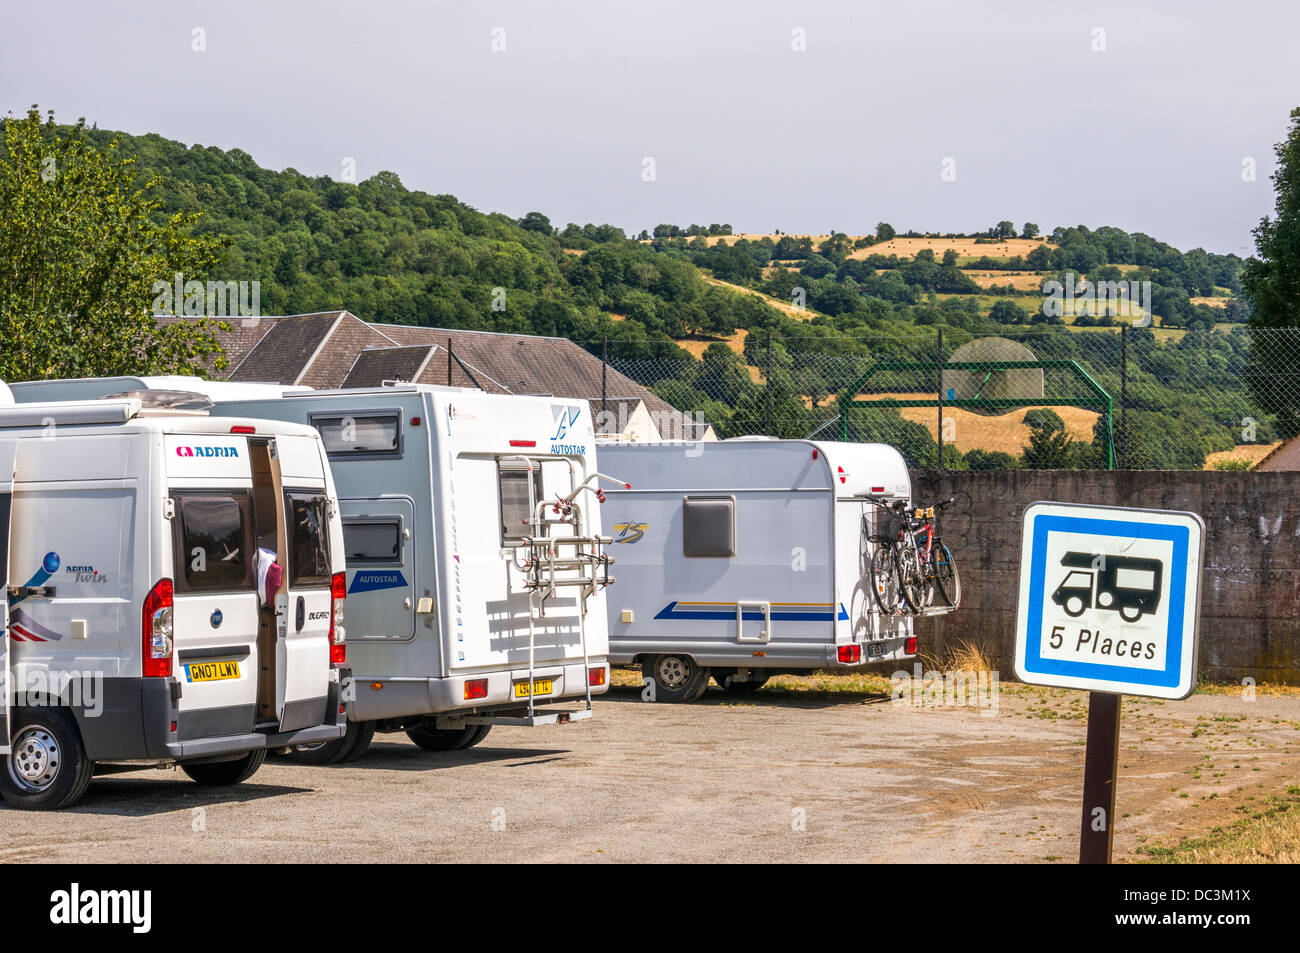 Il motorhome aire-de-camping-car scalo di Clécy, Calvados, Normandia, nel nord della Francia. Clecy è la "capitale" della collinare, Suisse Normande regione. Foto Stock